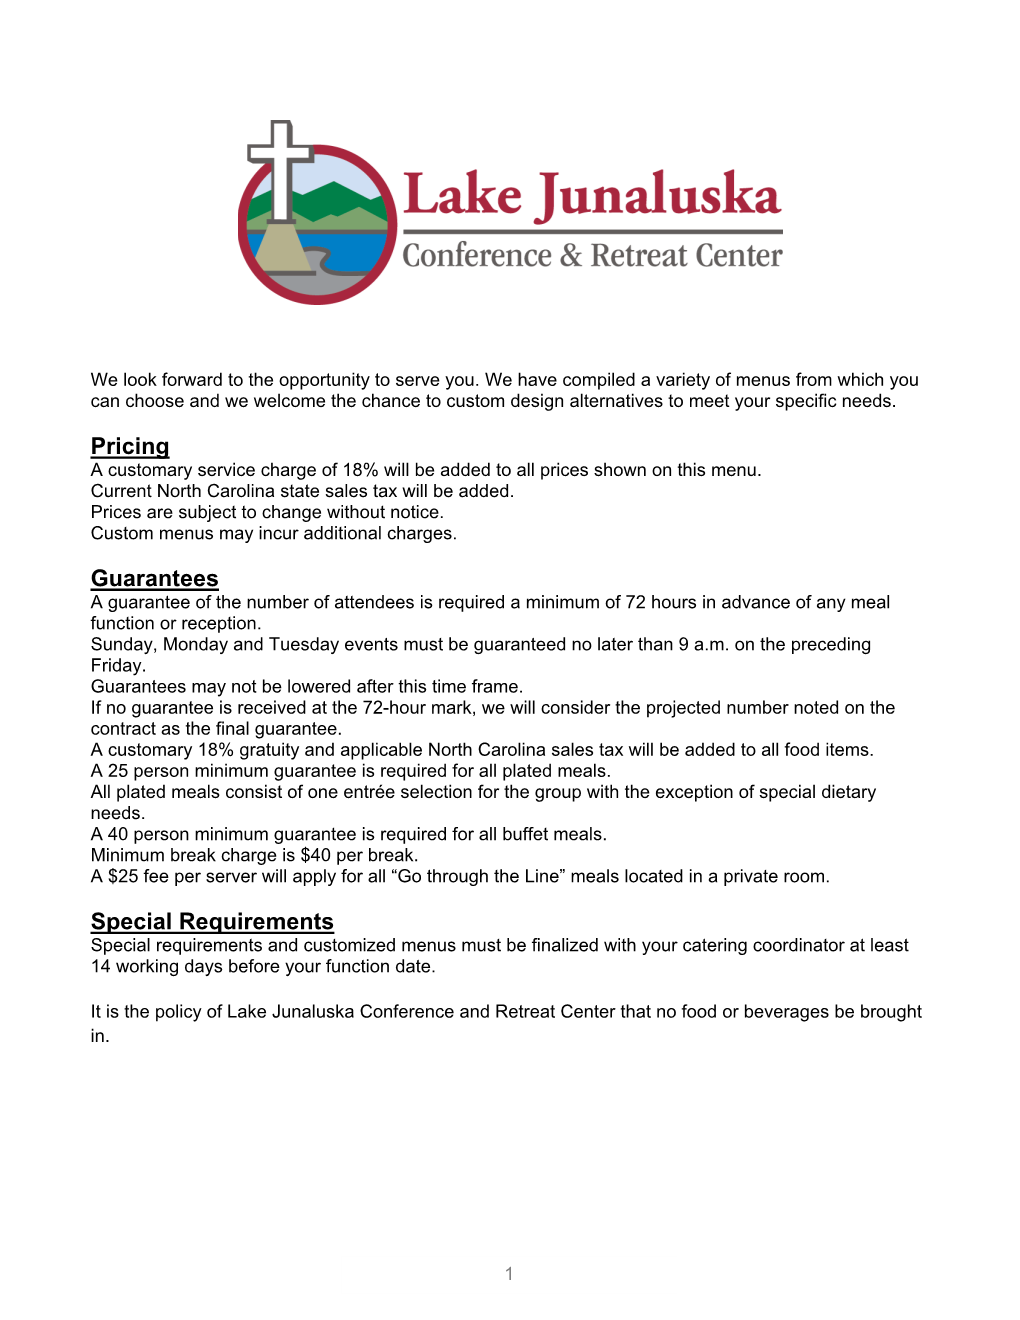 Lake Junaluska Catering Menu